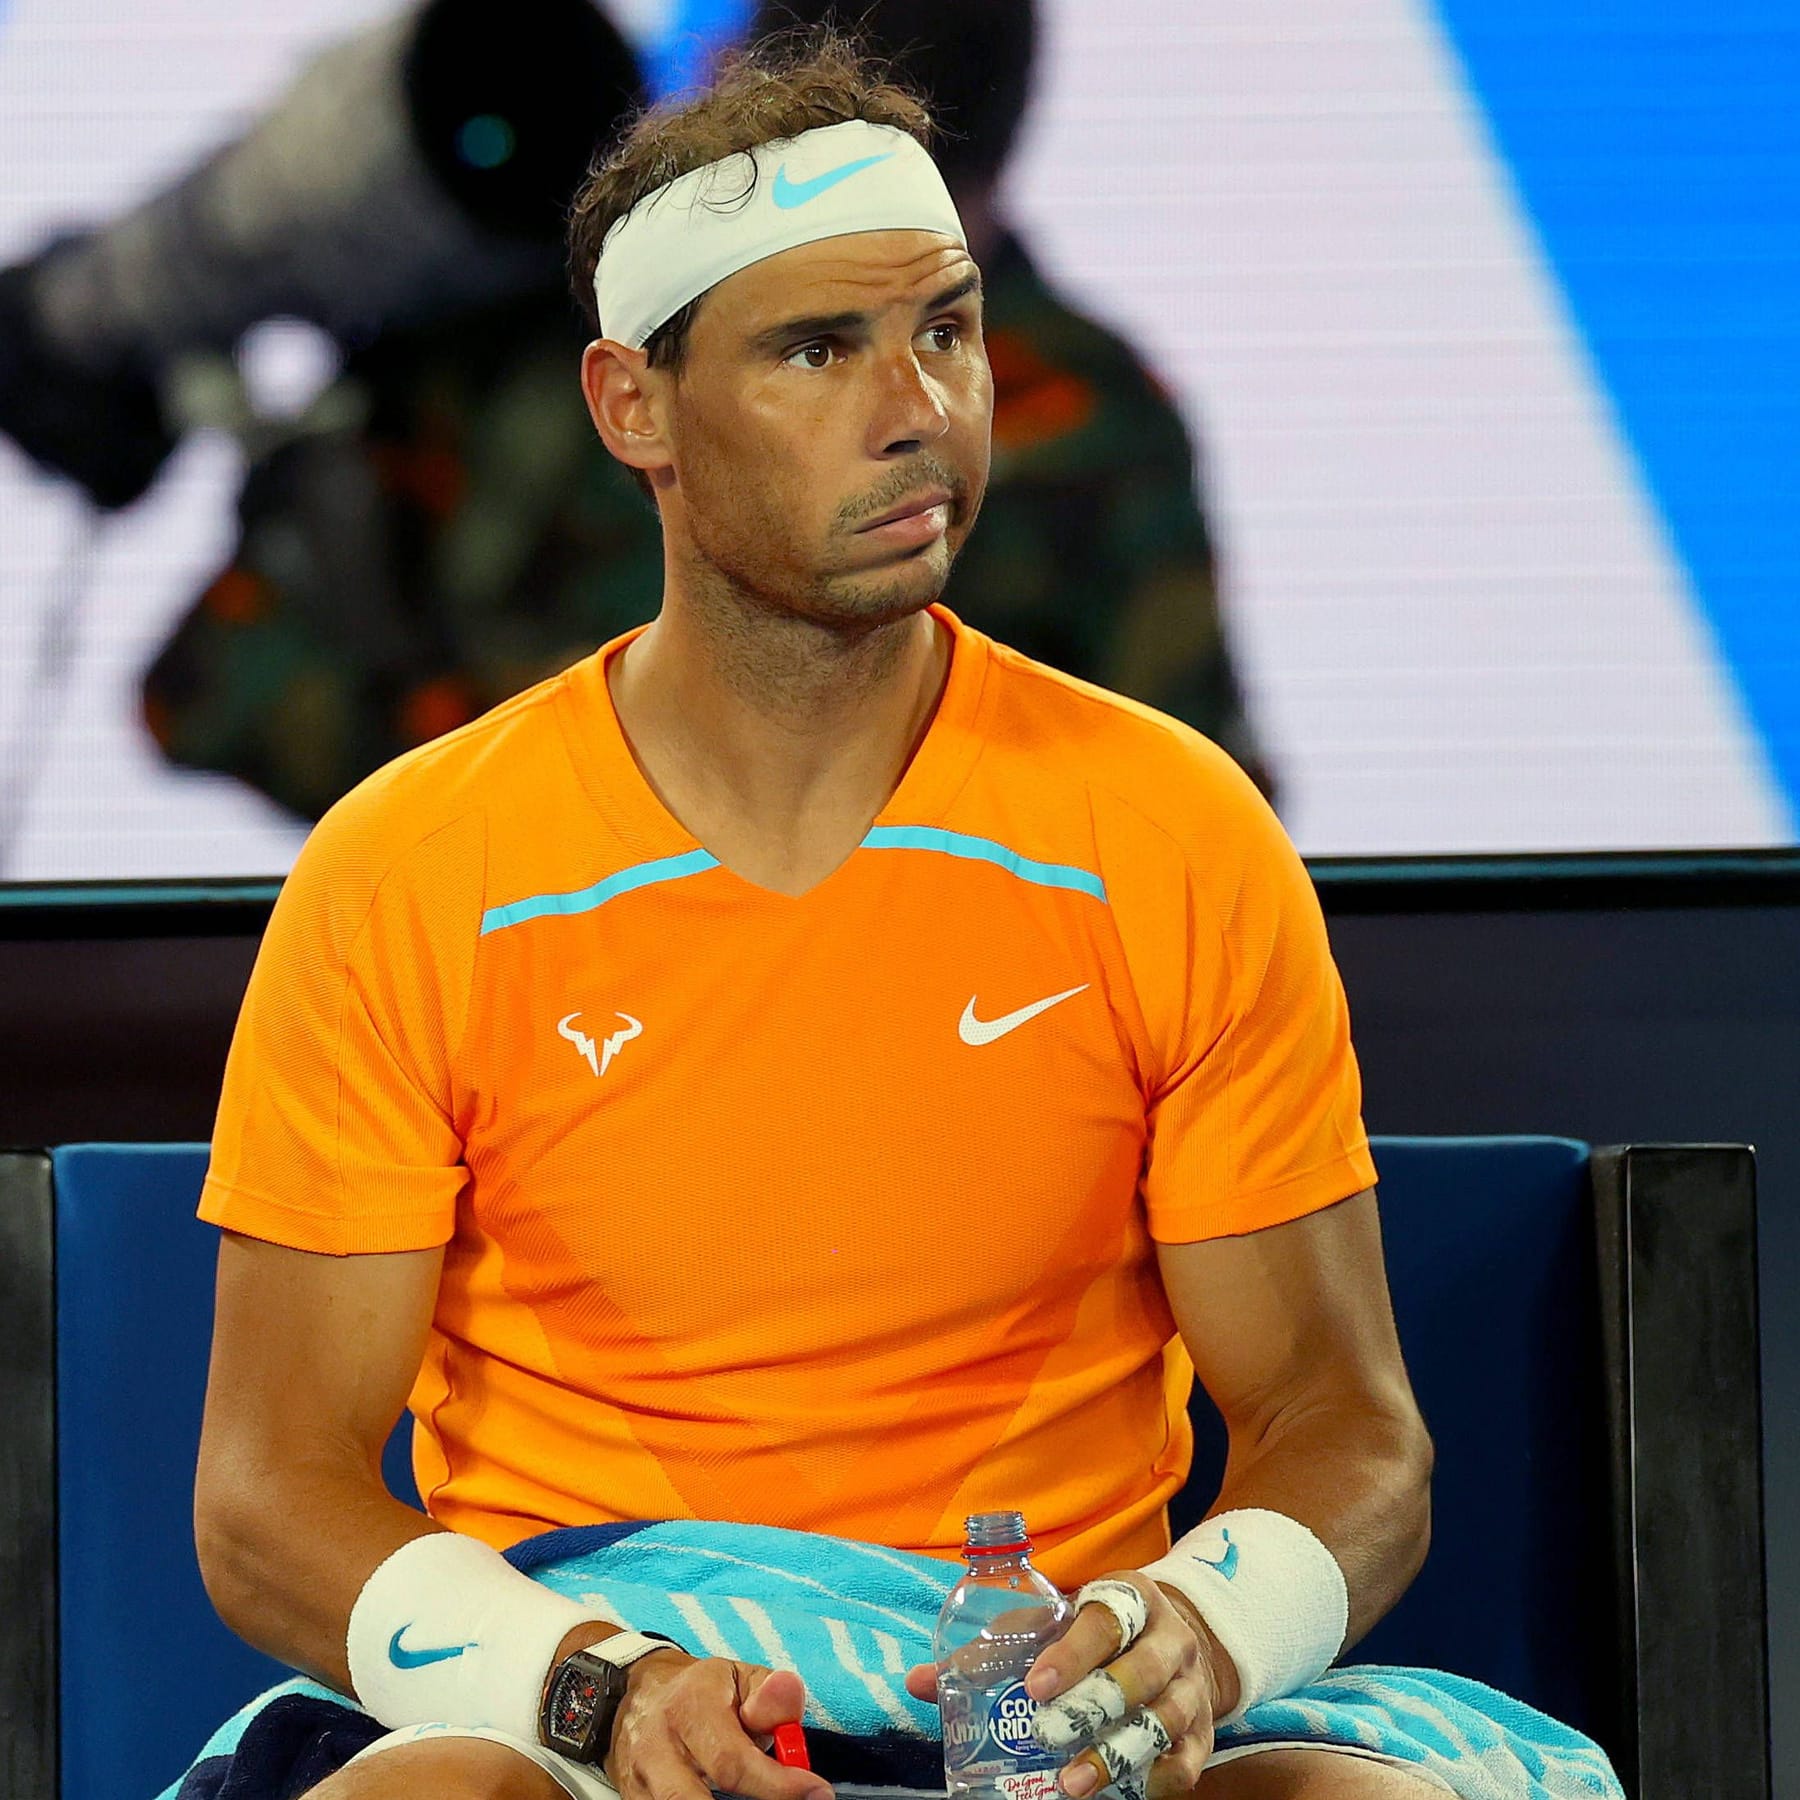 Sorgen um Tennisstar Rafael Nadal Schockierendes Video aufgetaucht